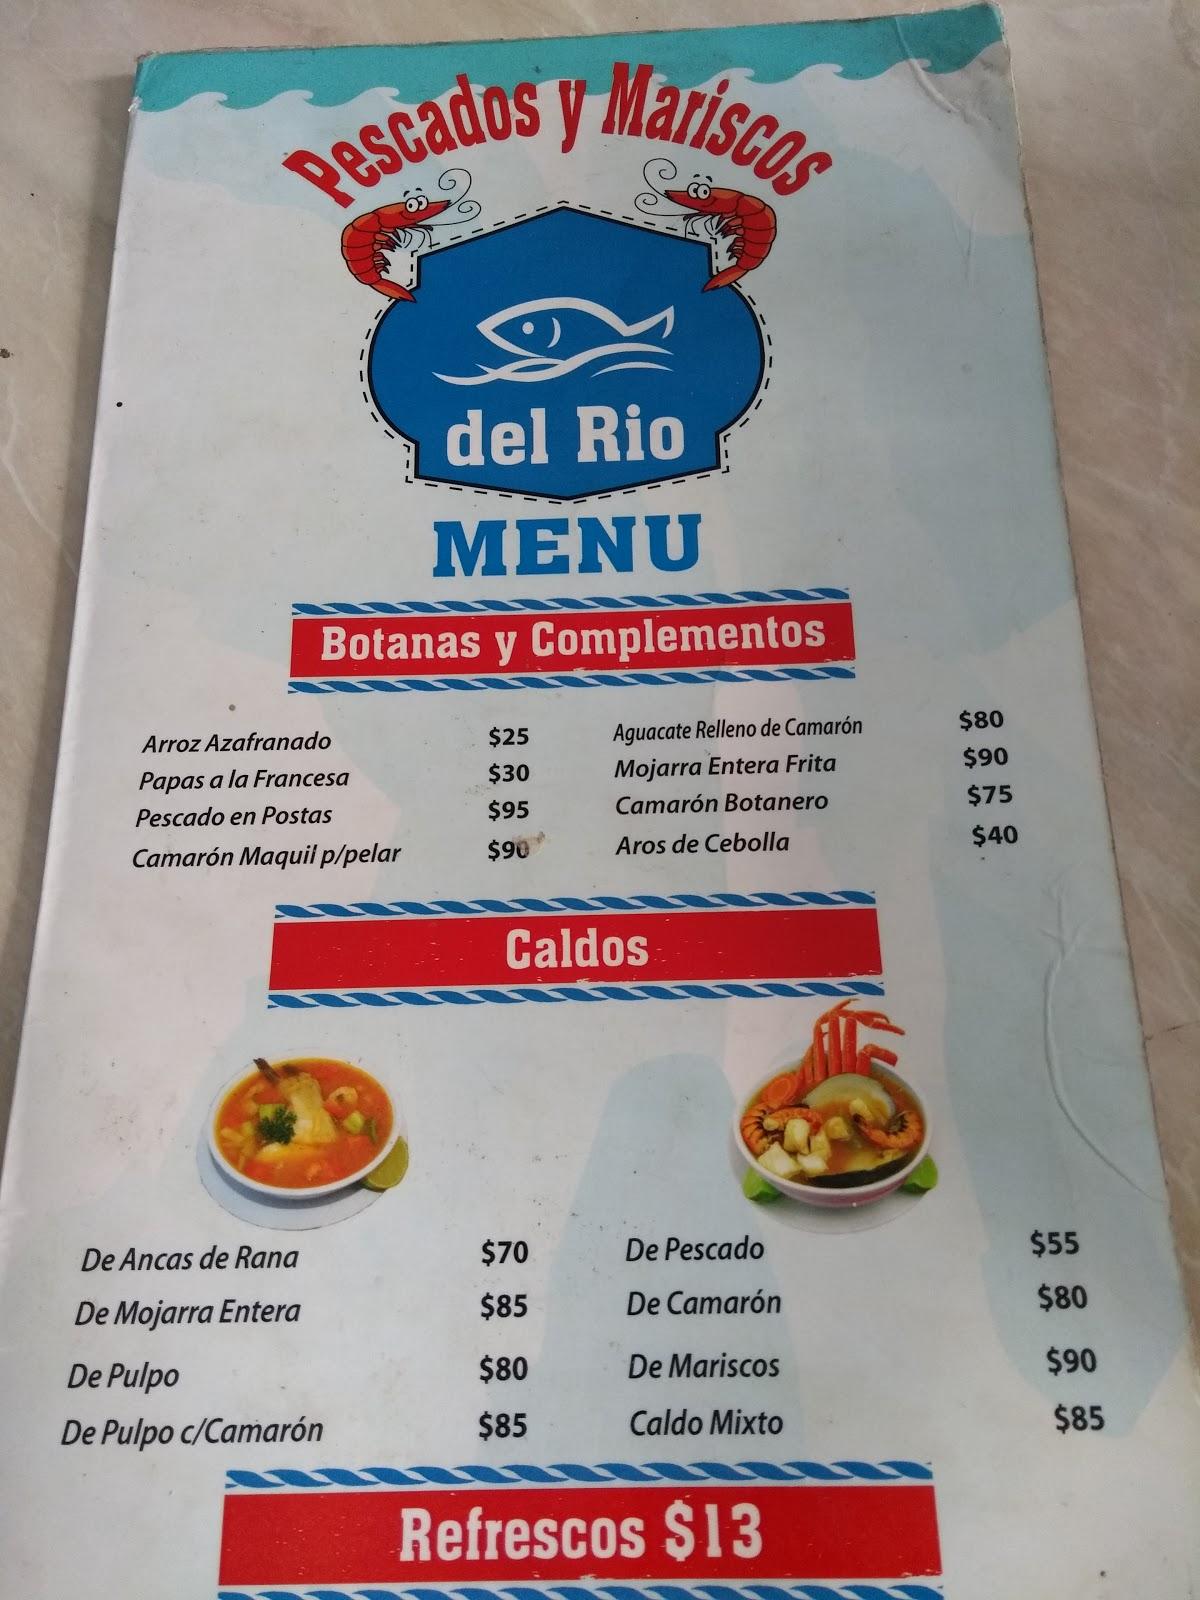 Menu at Pescadería Y Mariscos Del Río restaurant, Ciudad Apodaca